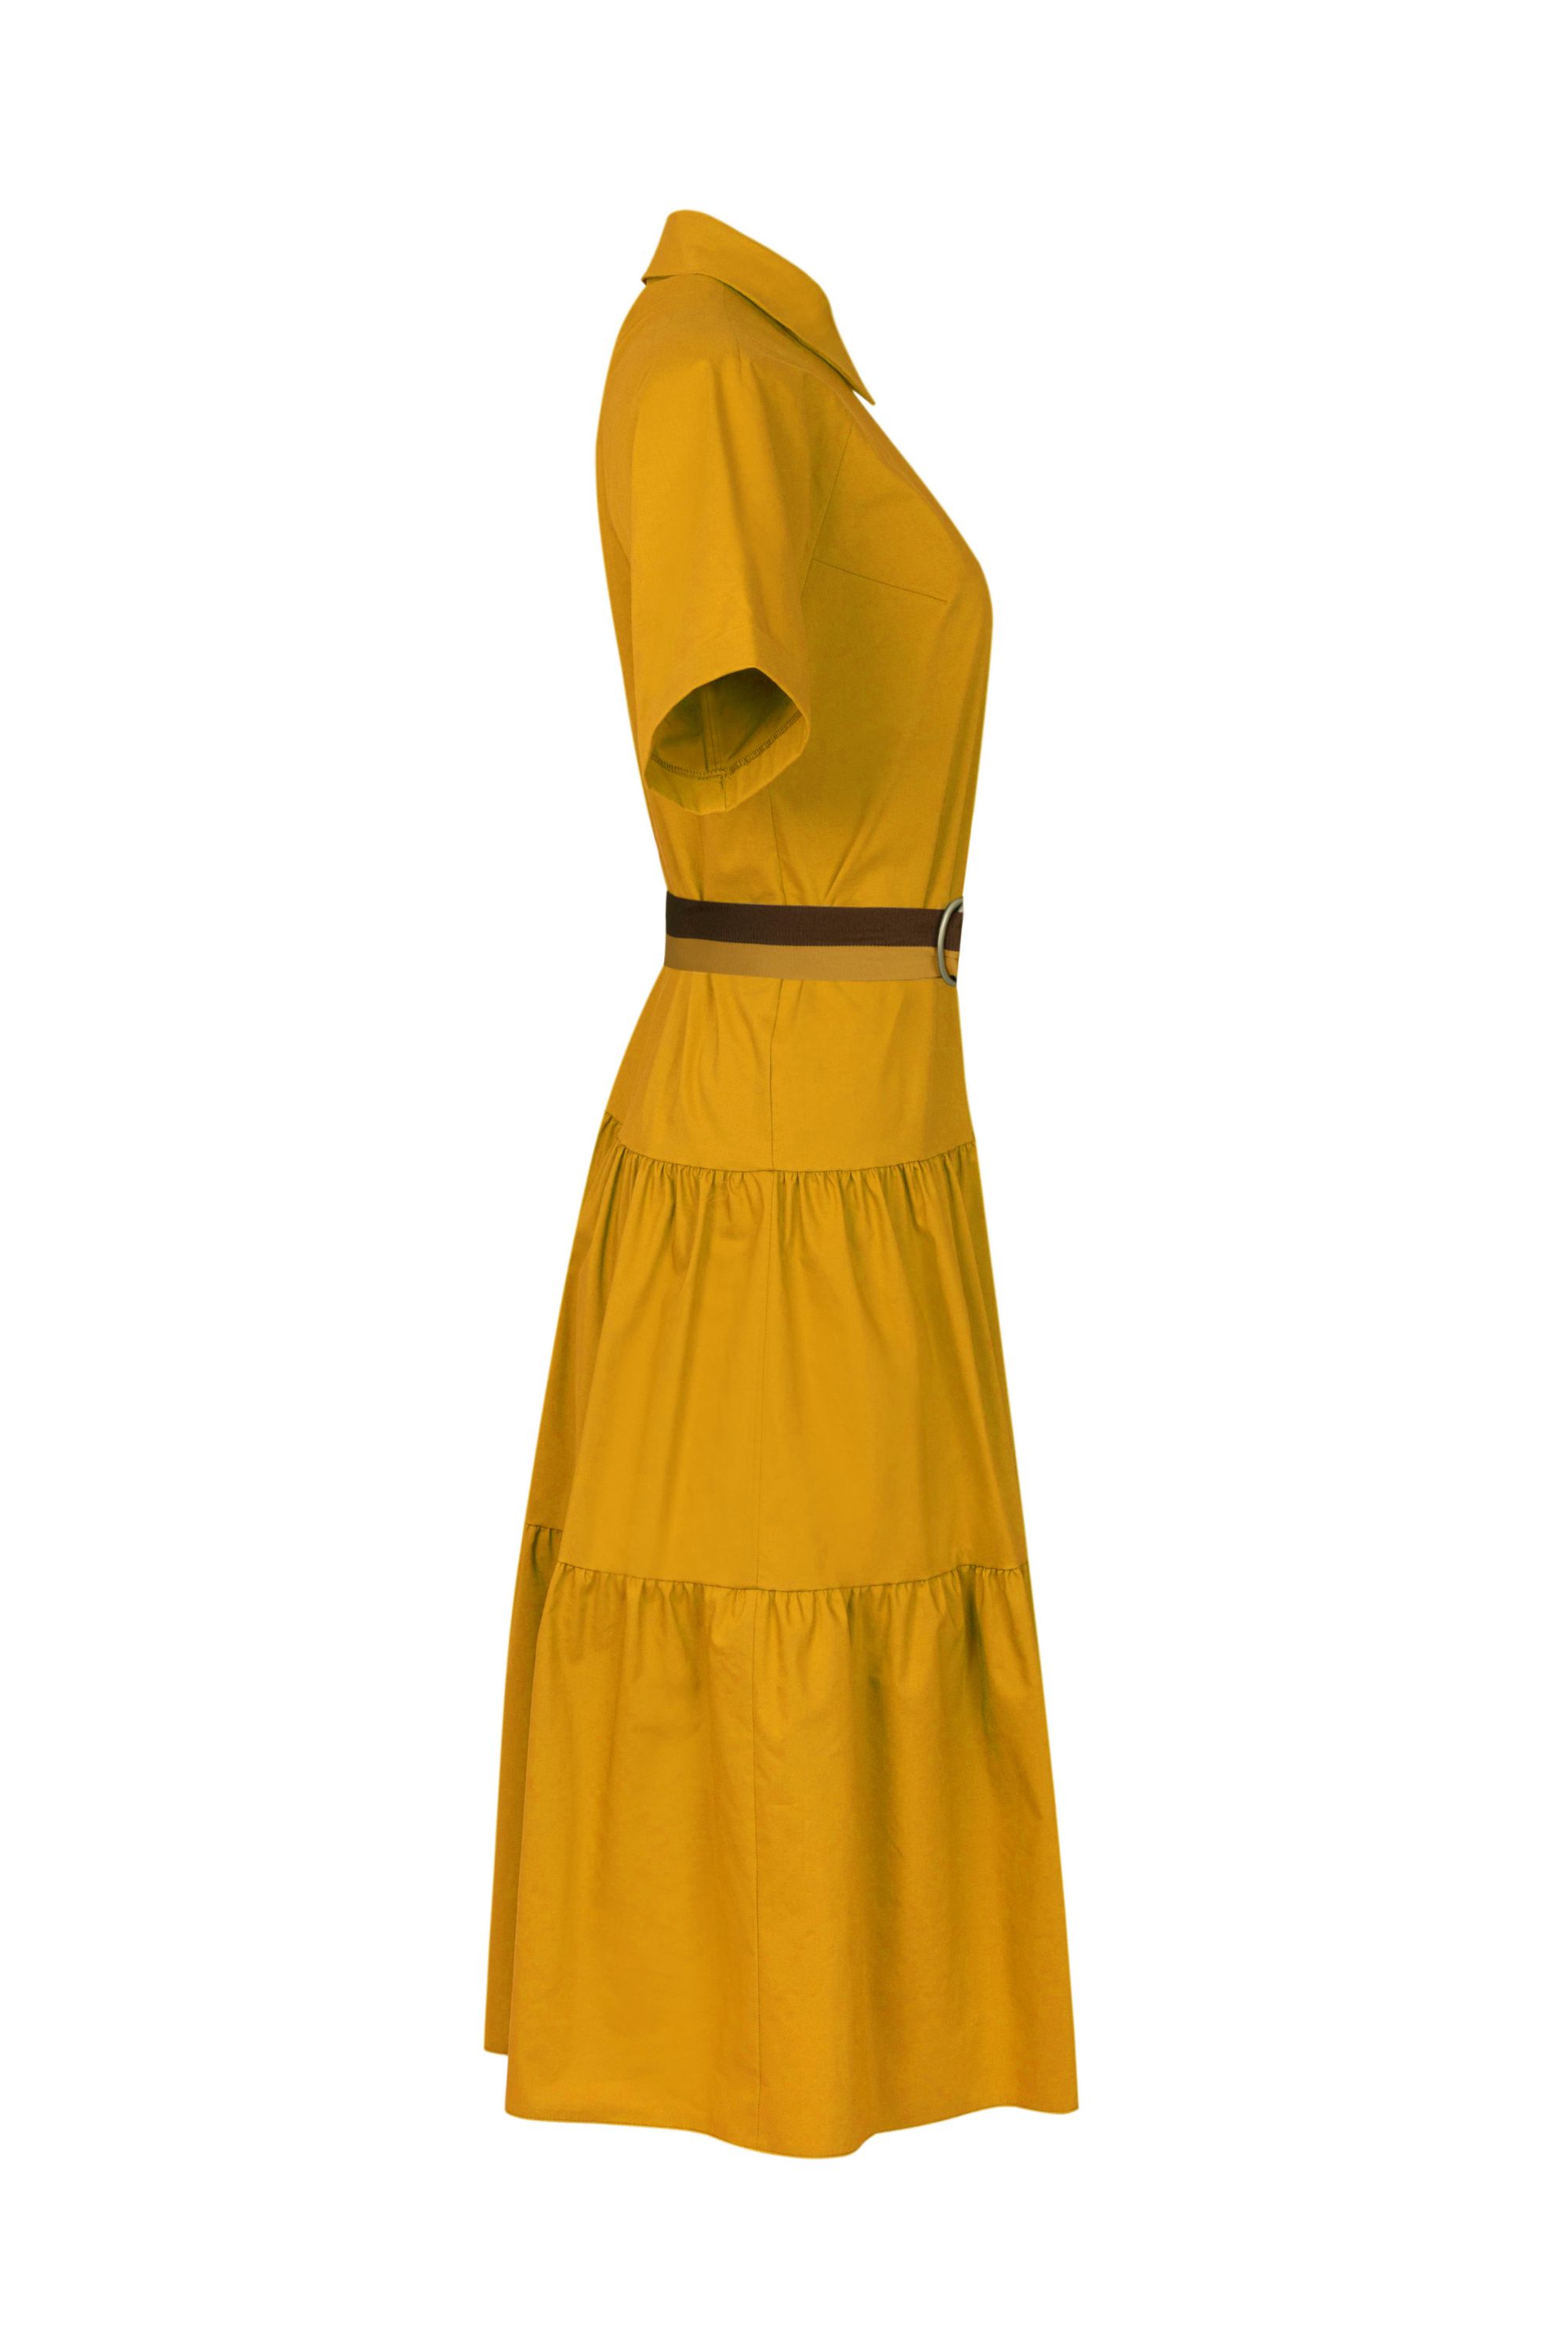 Платье женское 5К-10960-2. Фото 2.